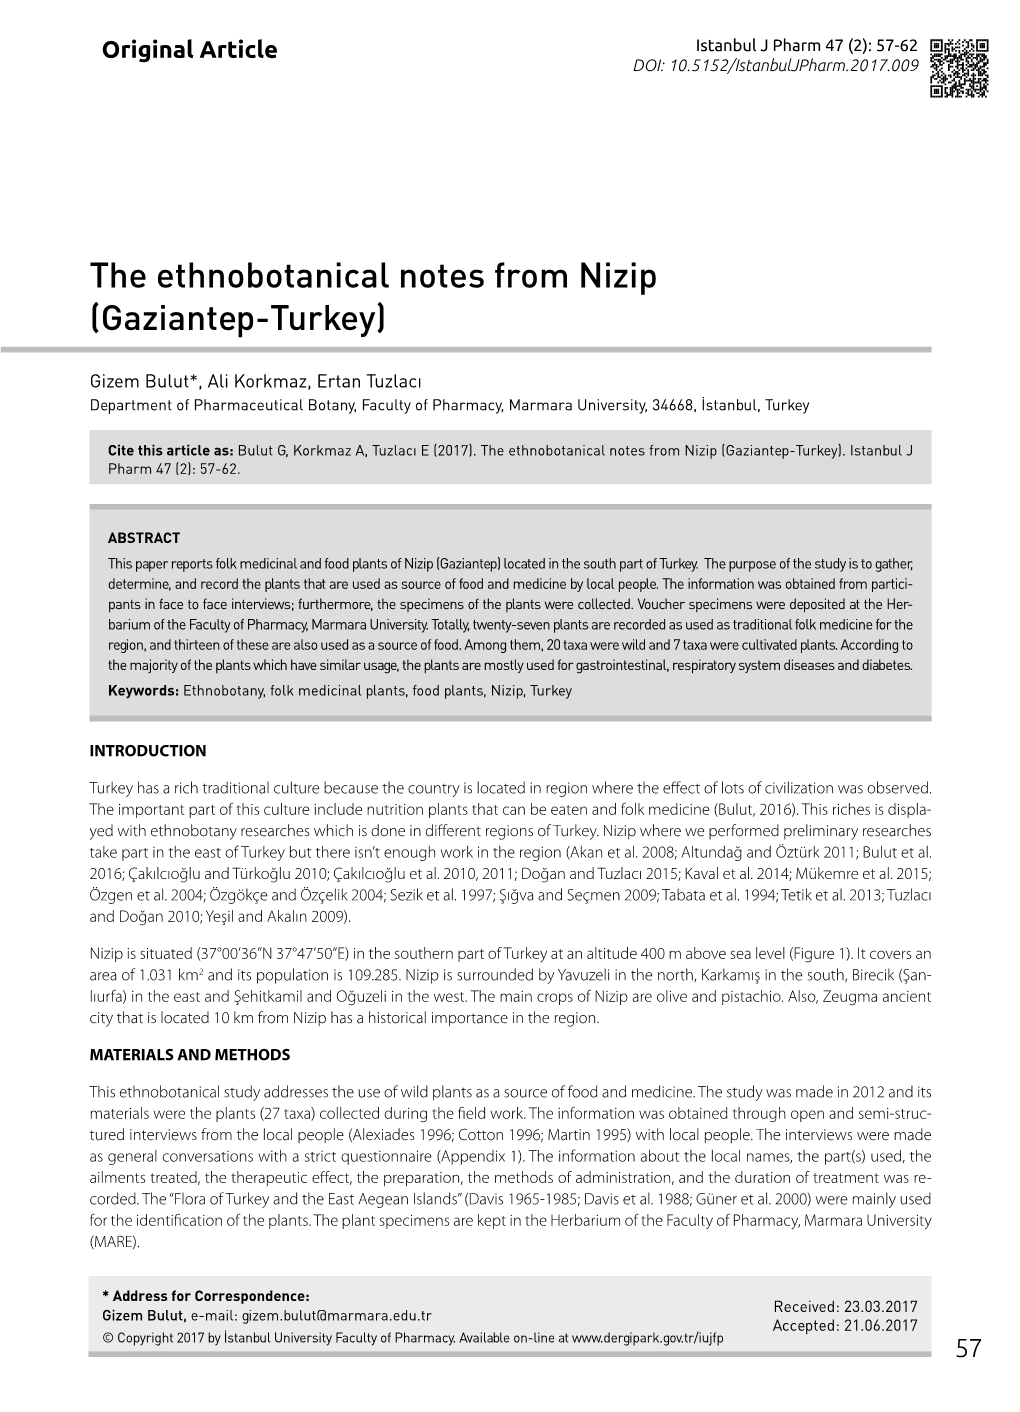 The Ethnobotanical Notes from Nizip (Gaziantep-Turkey)